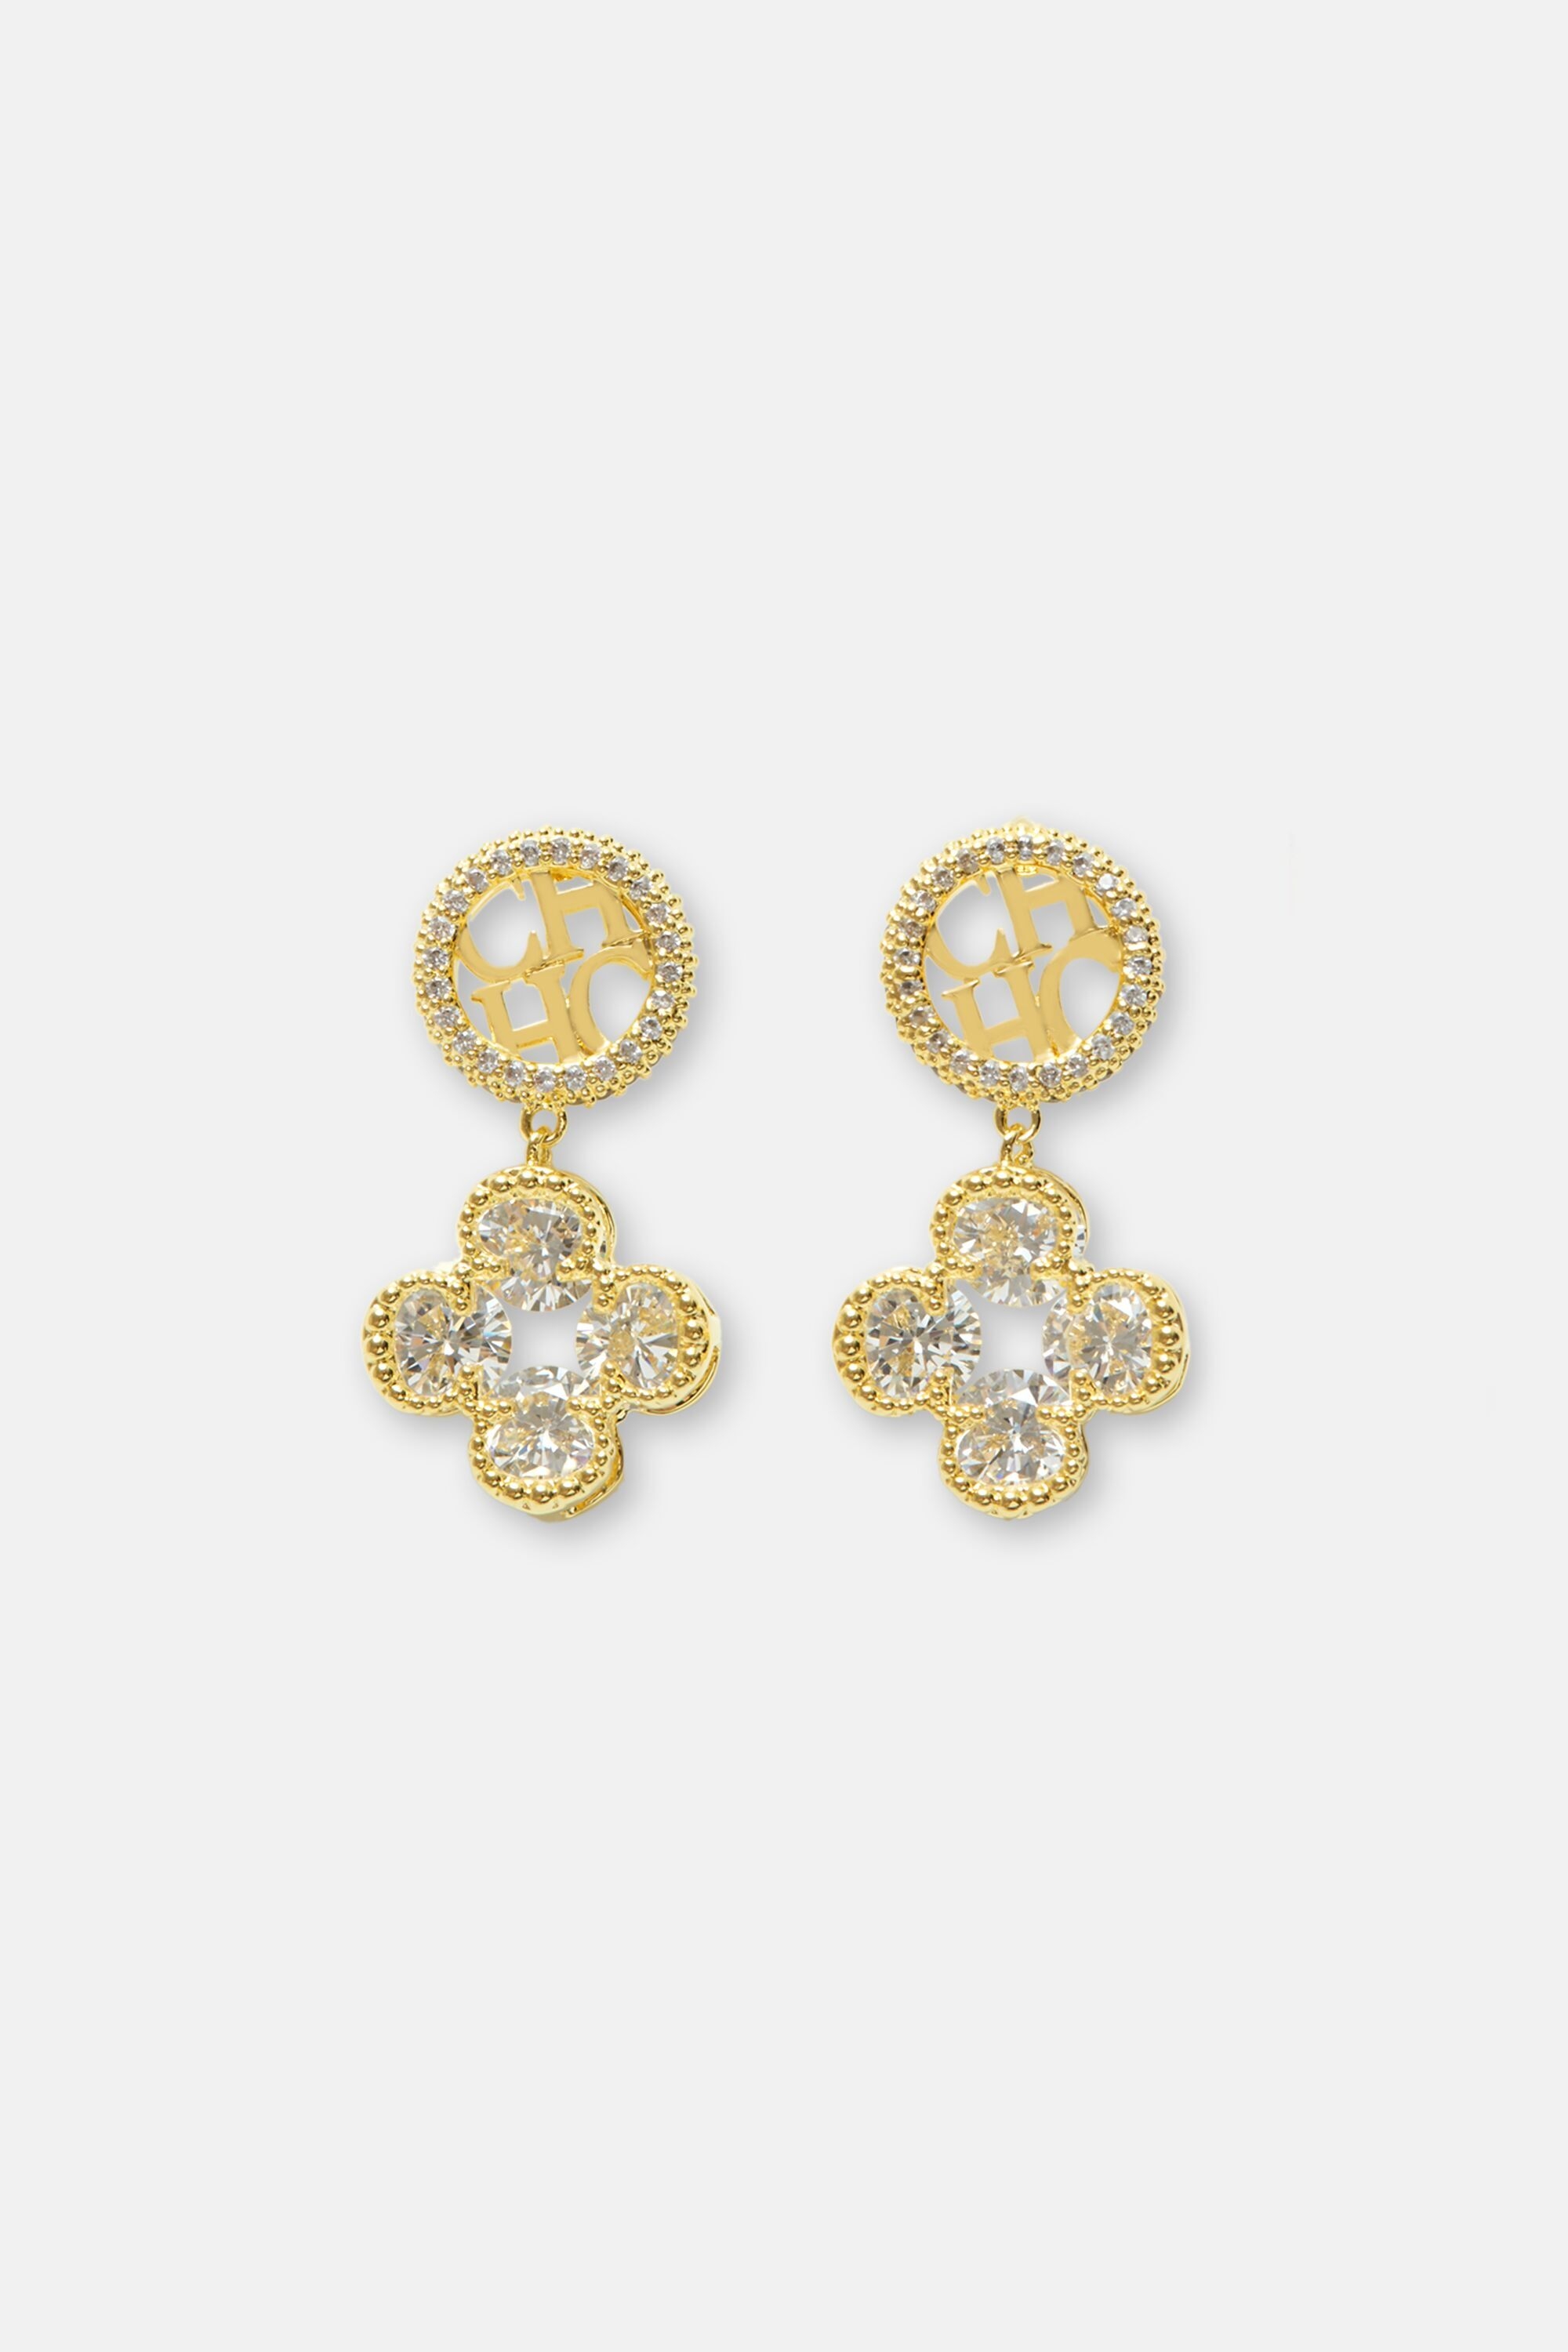 Rosetta Insignia Diamond earrings